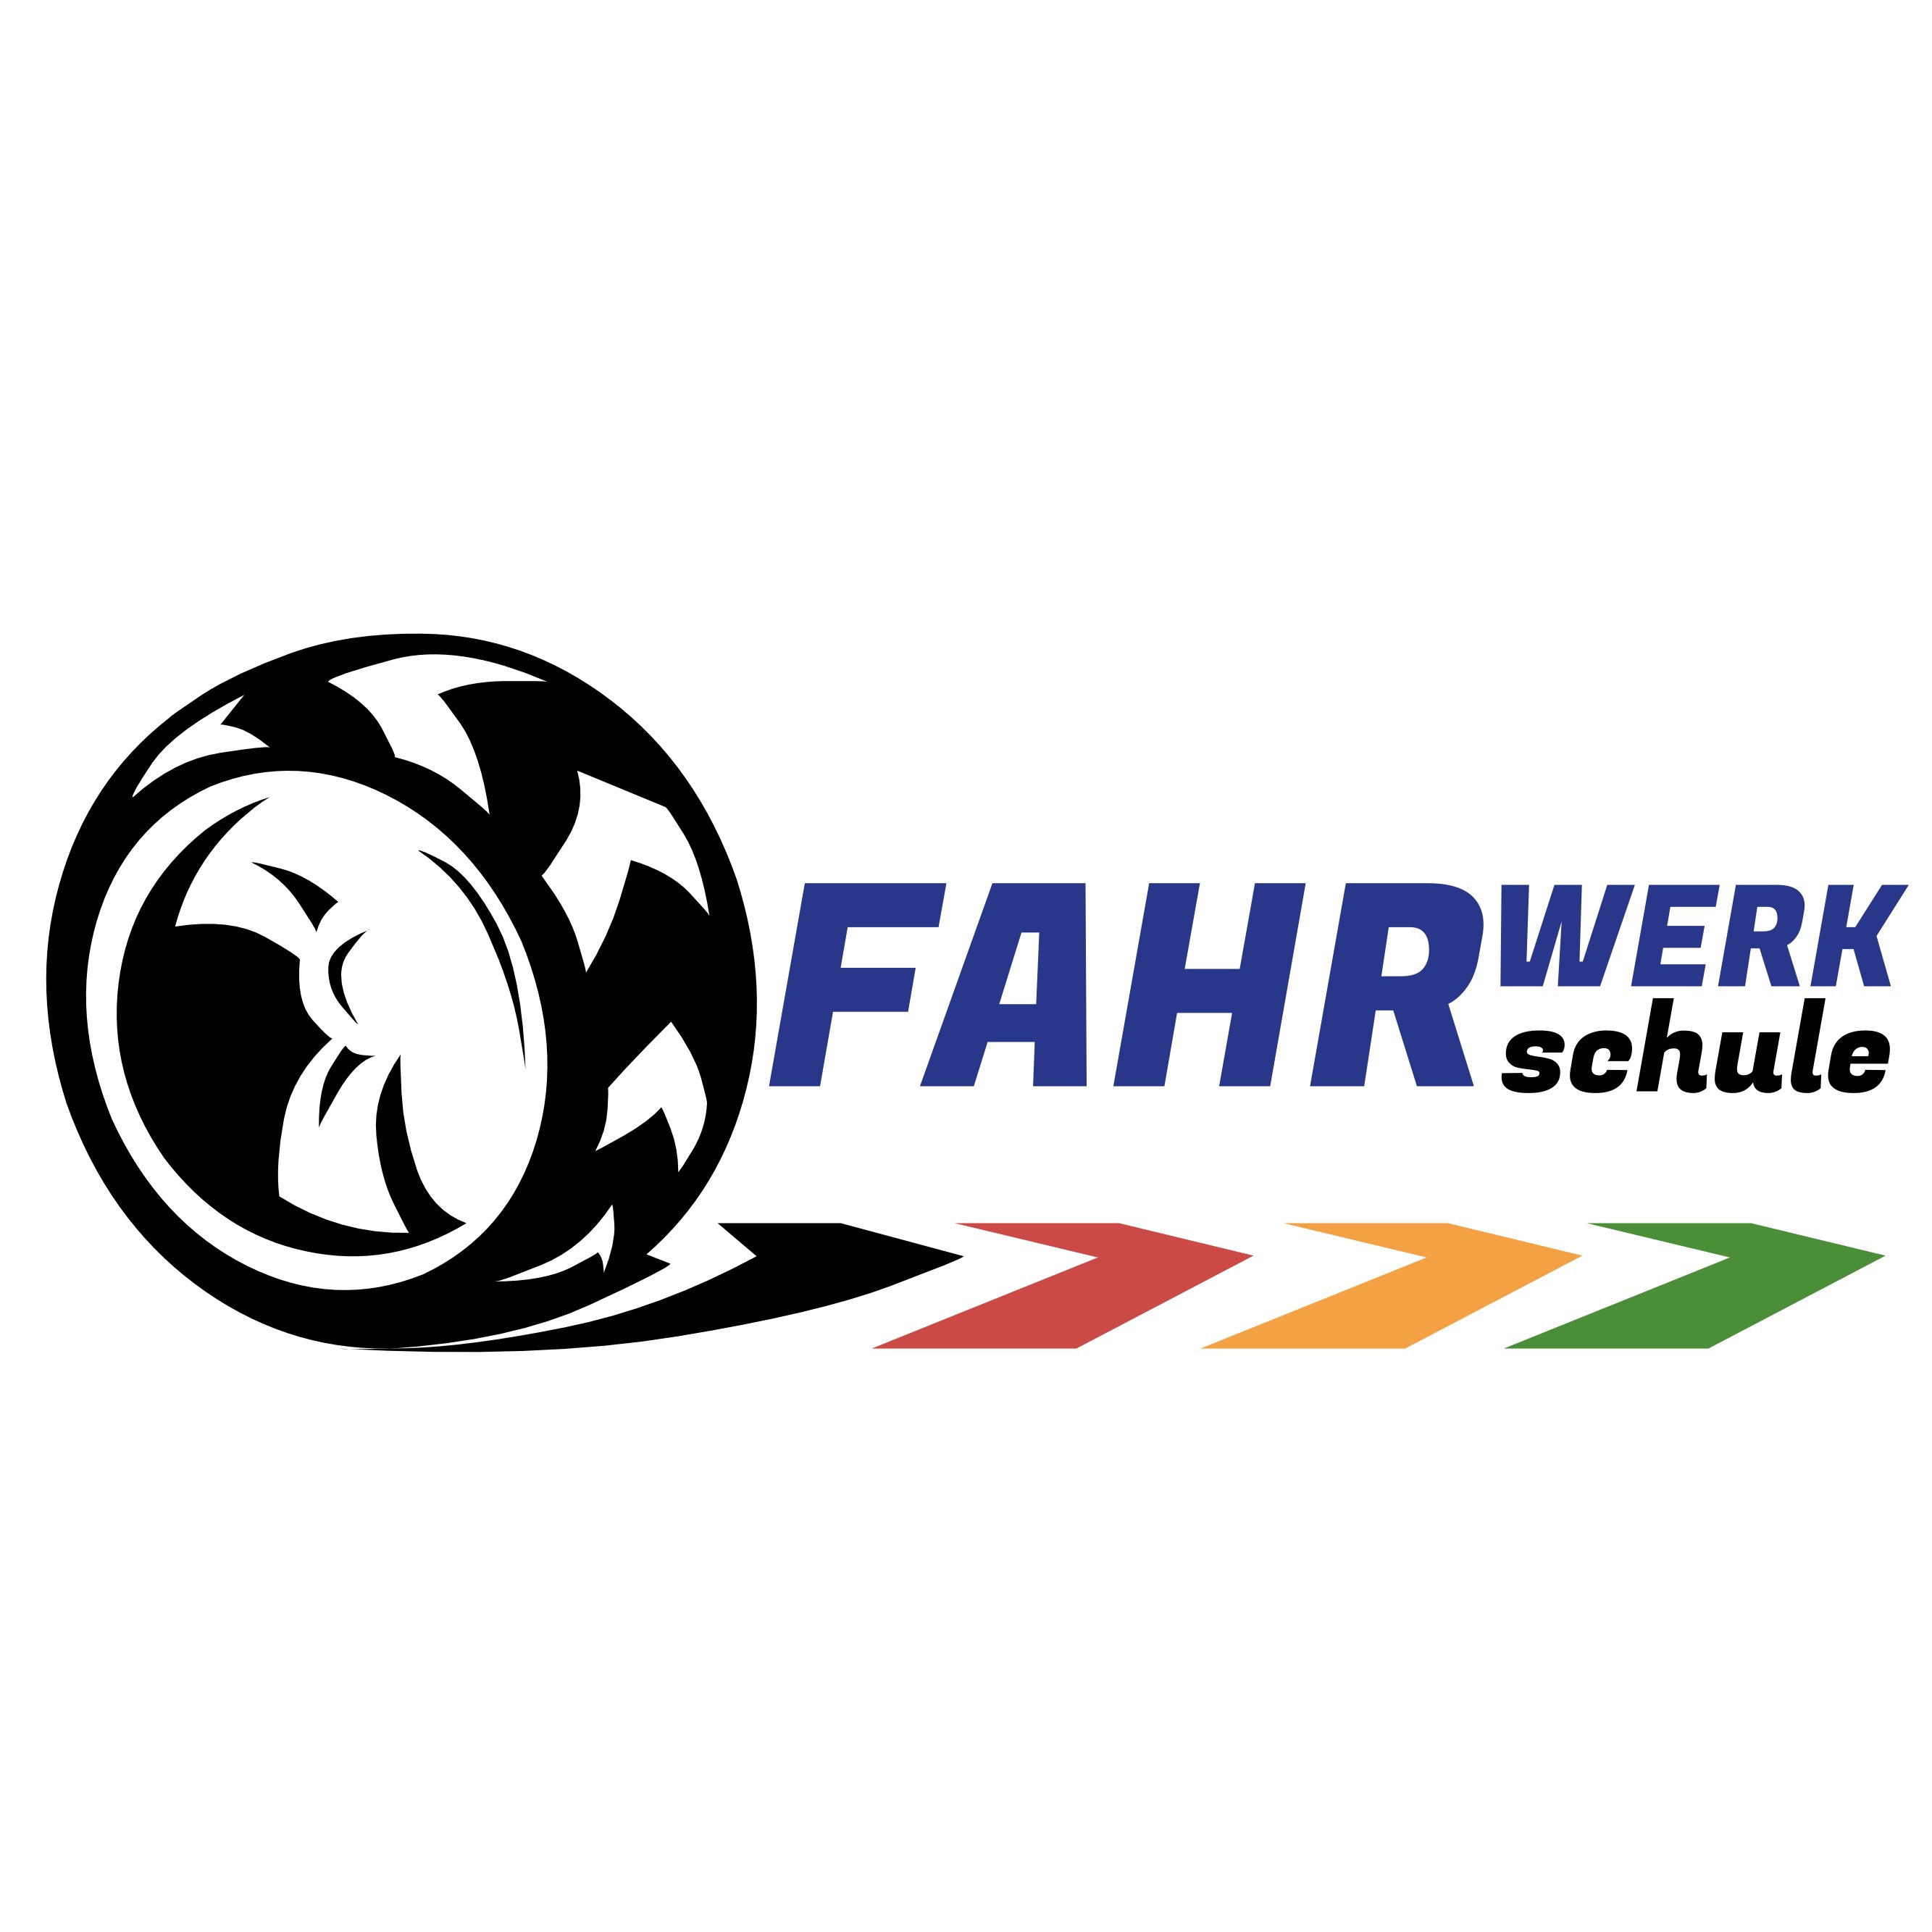 Fahrschule Fahrwerk GmbH in Heroldsbach - Logo